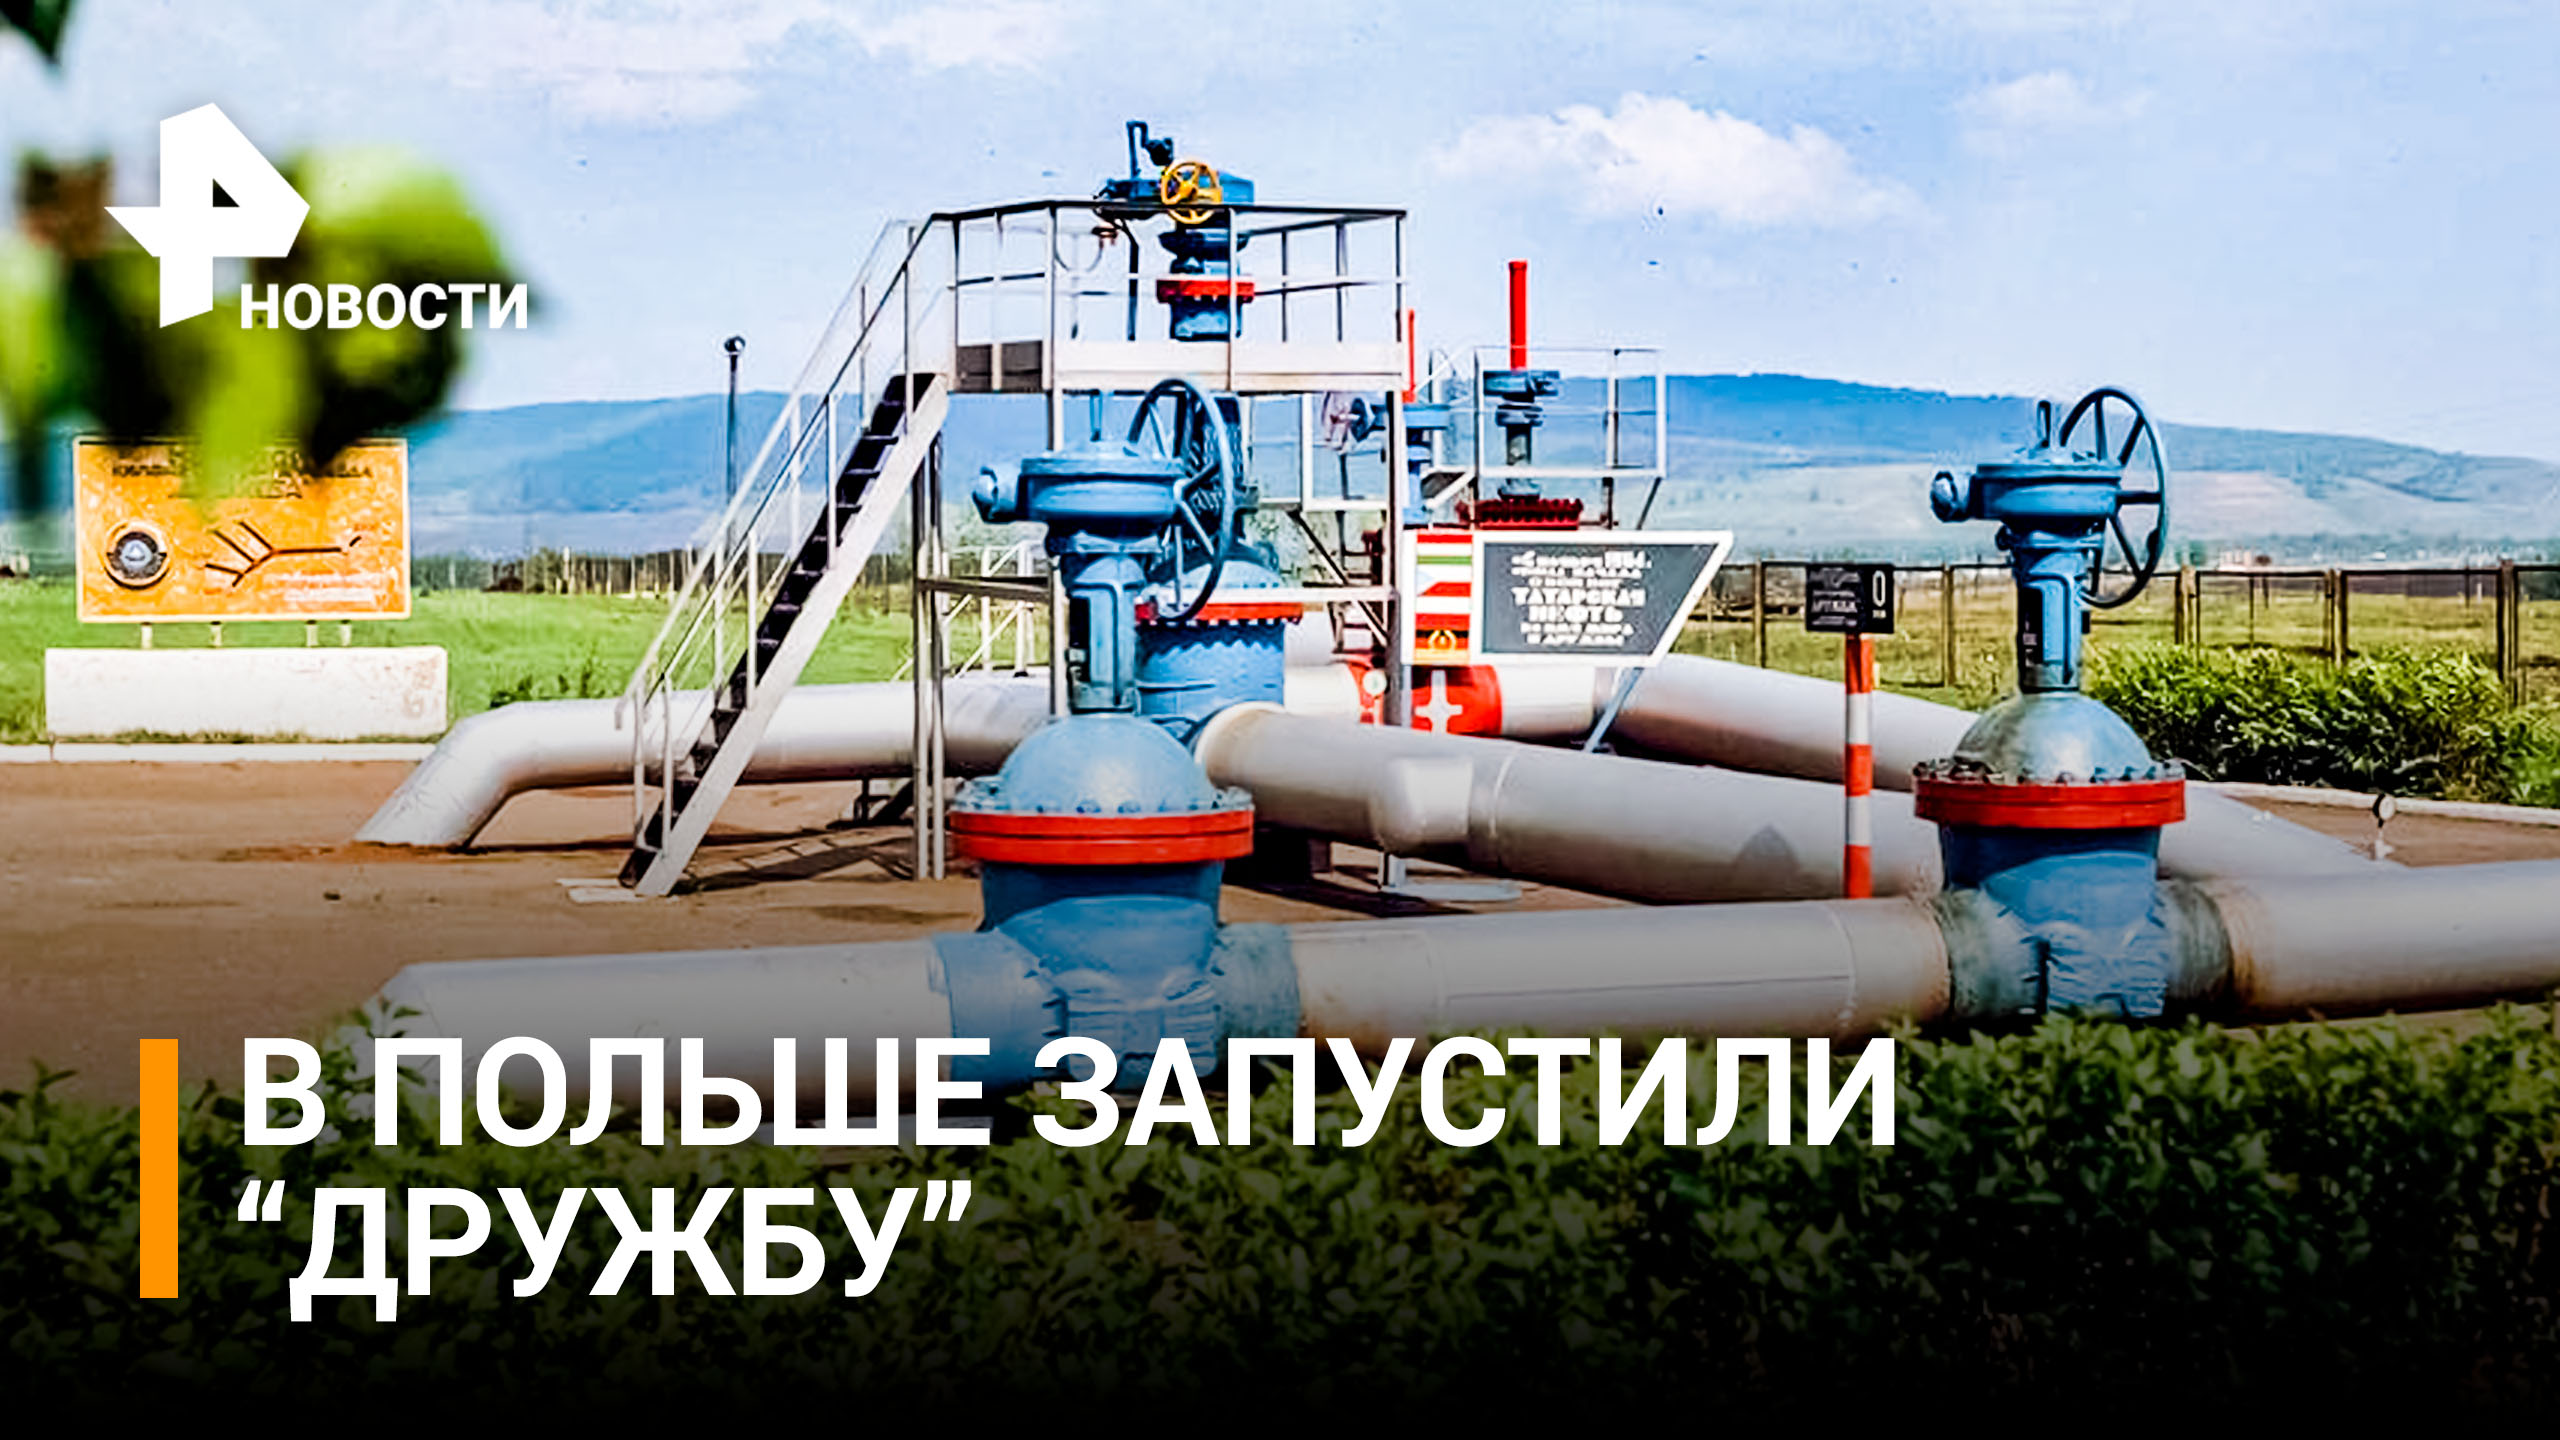 В Польше возобновили поставки нефти через трубопровод "Дружба" / РЕН Новости